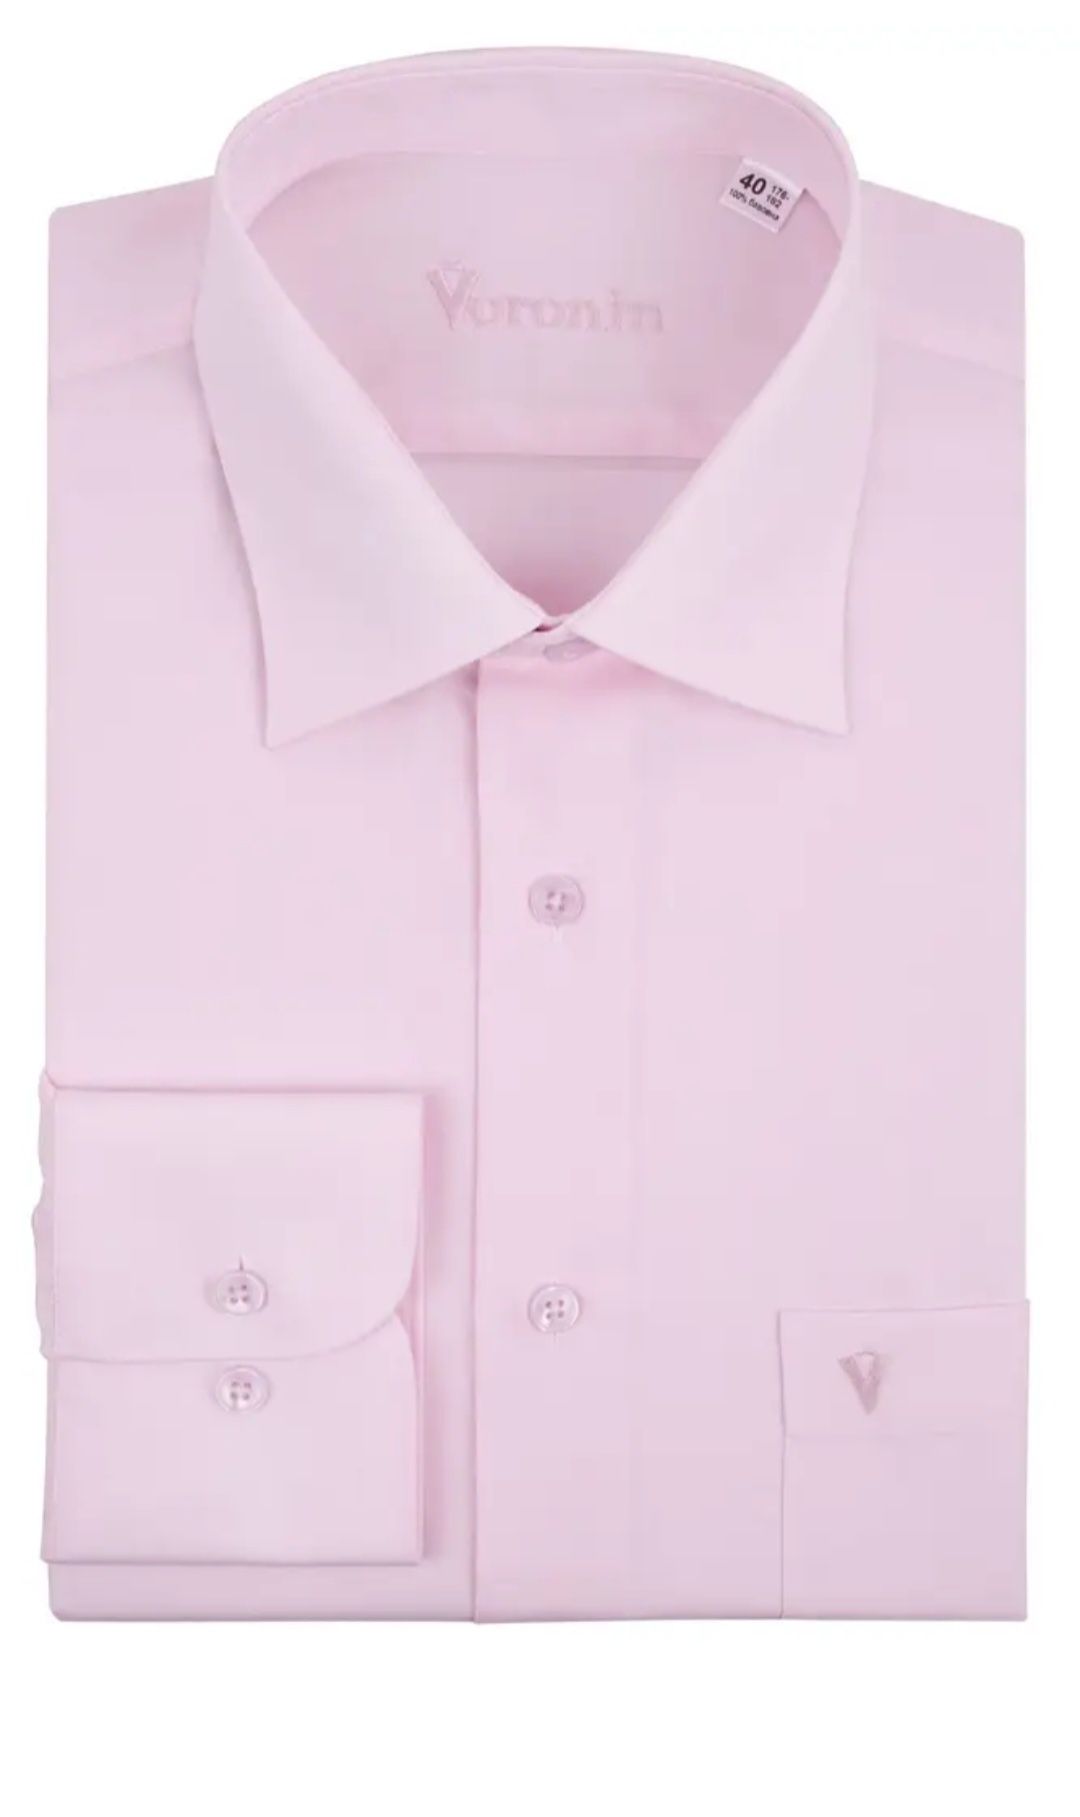 Рубашка классика,, VORONIN,,49 и 50 размер